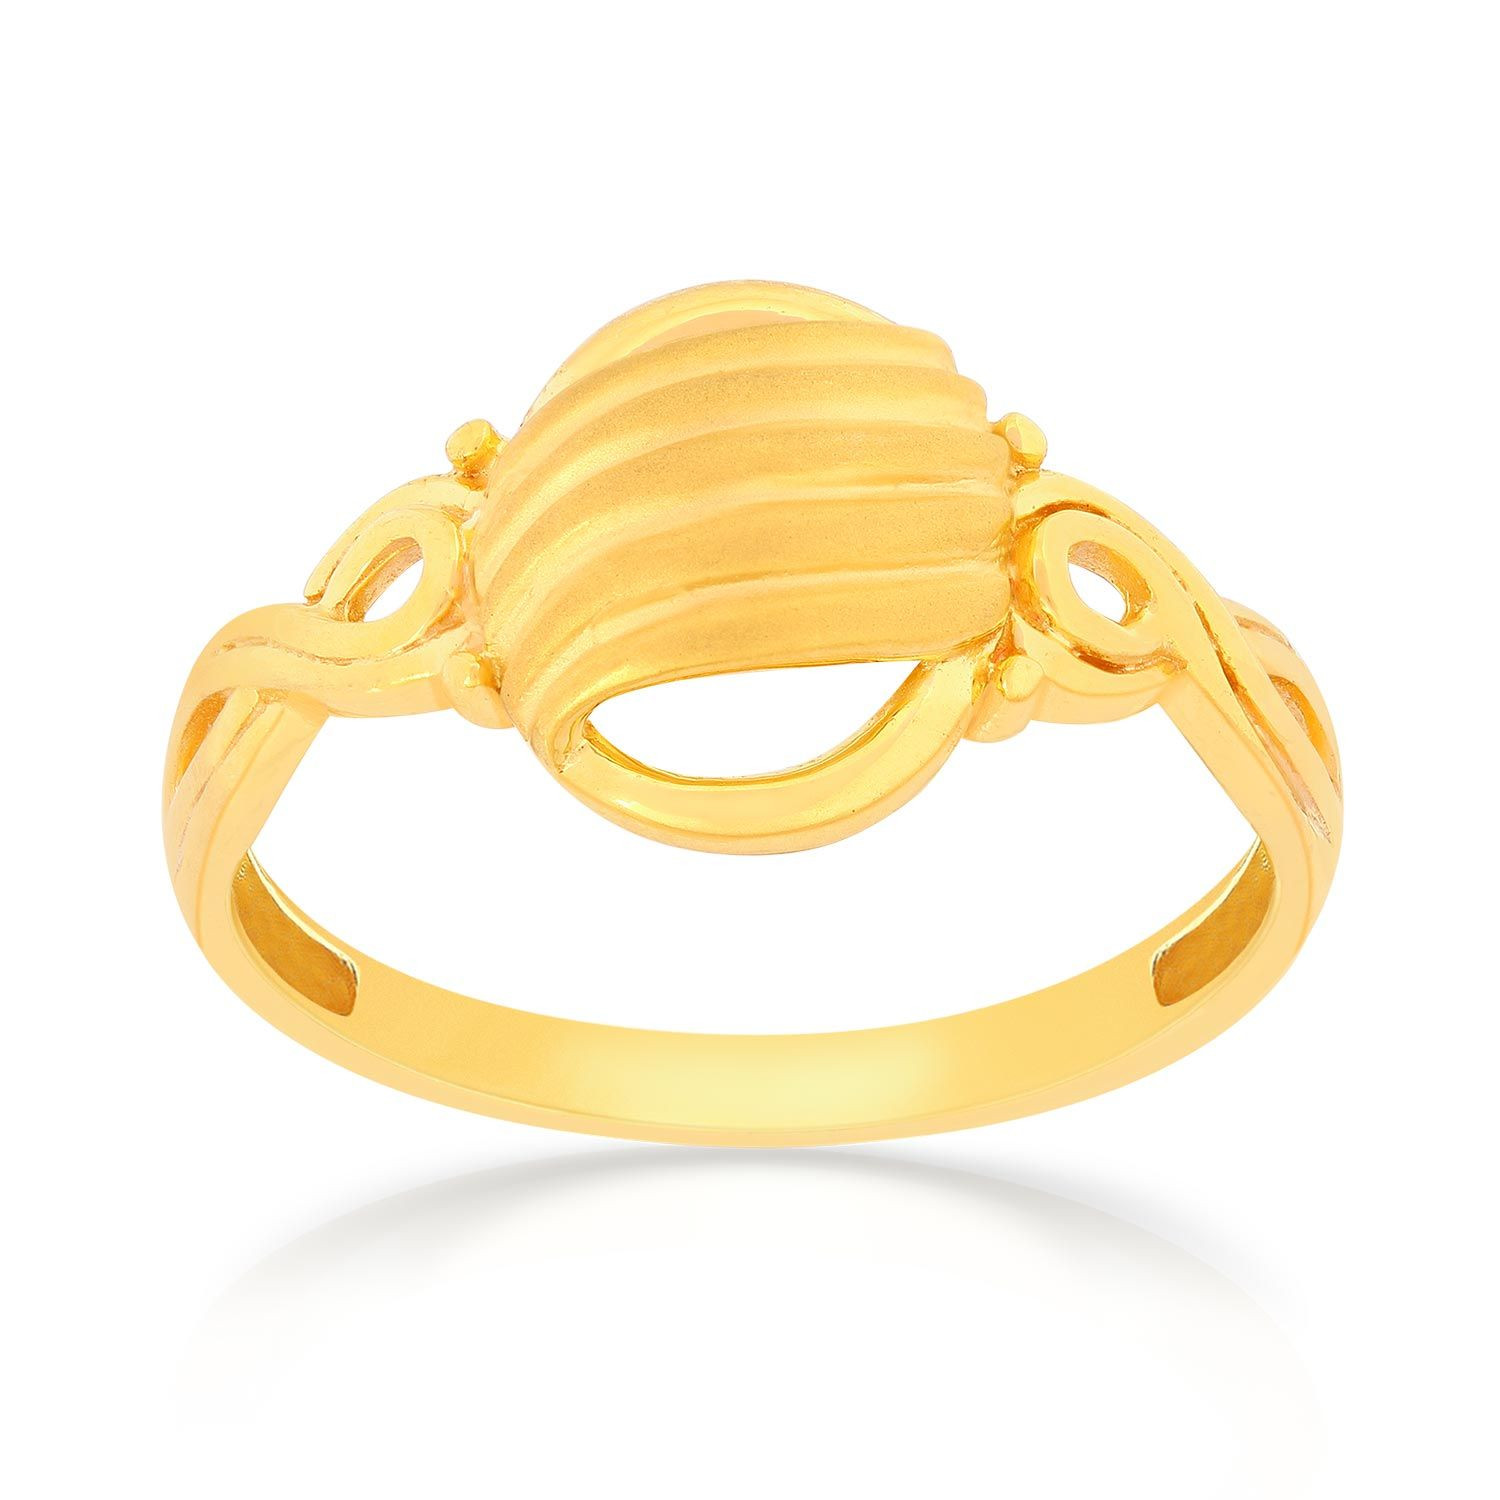 Malabar Gold Ring SKYFRDZ015